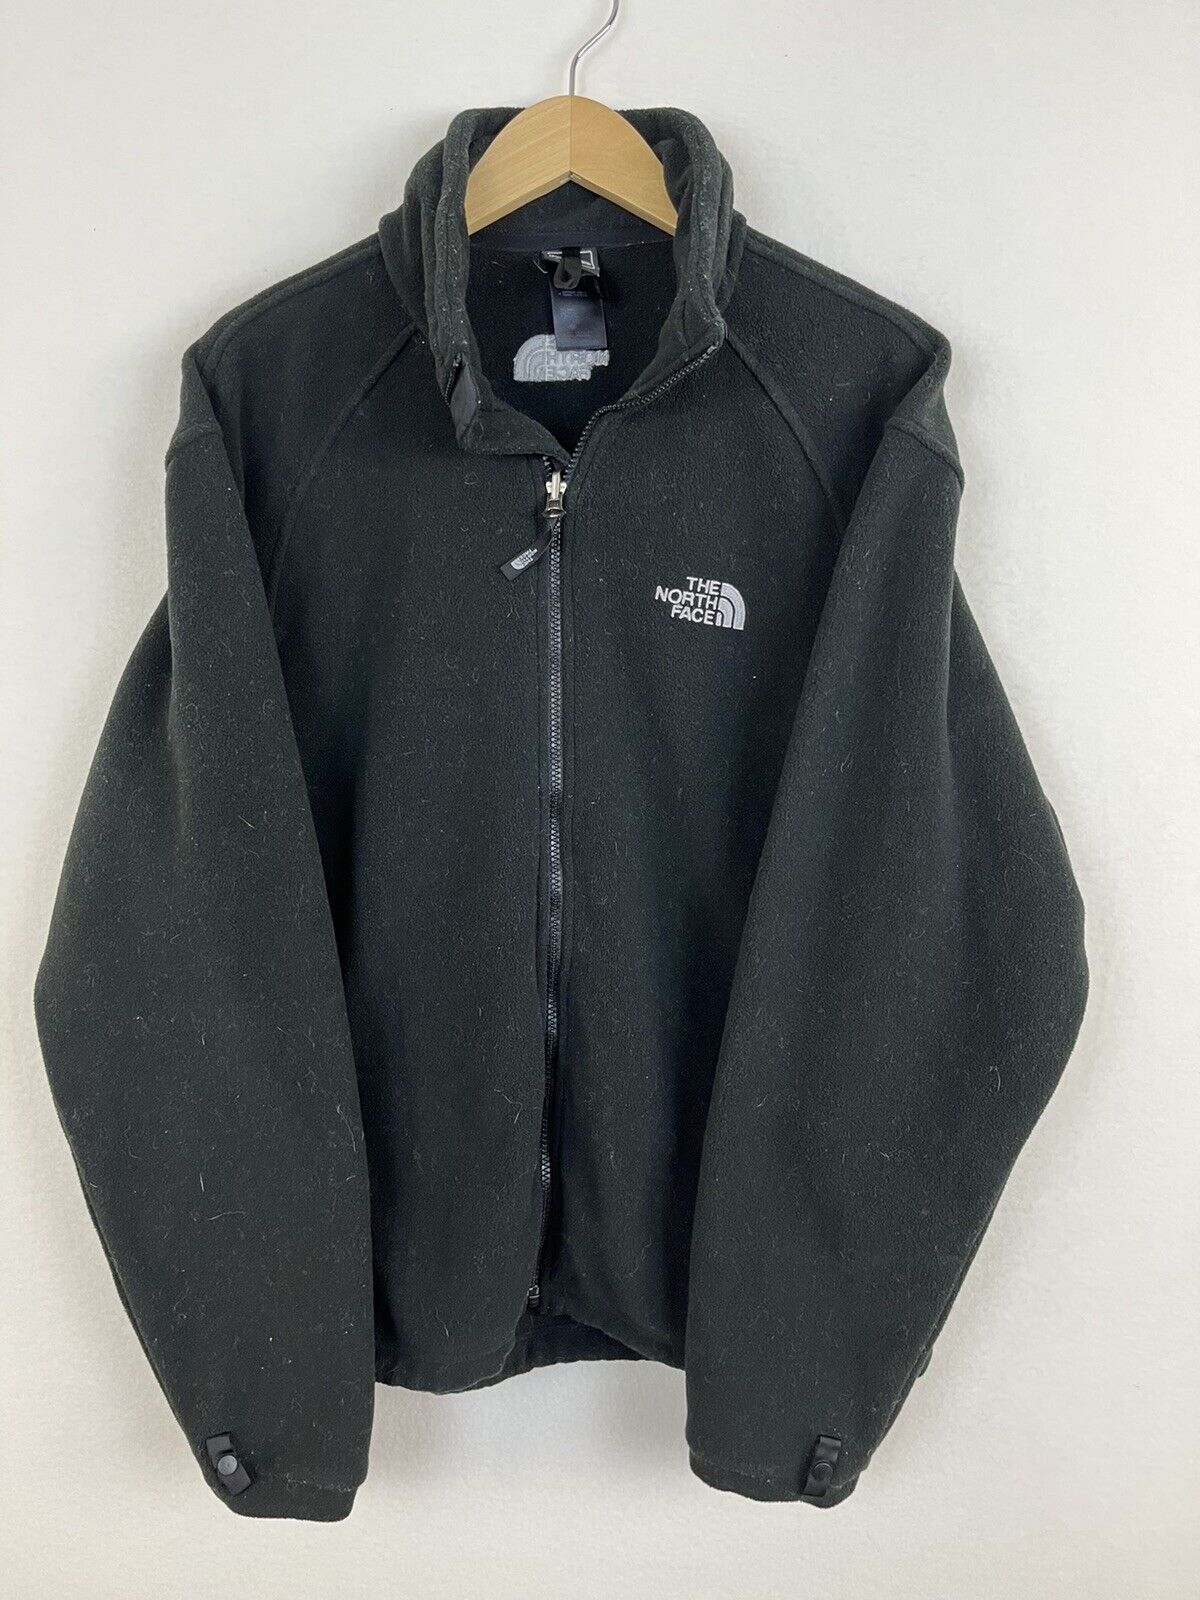 The North Face Black Full Zip Fleece Jacket Mens Medium Insulated Winter Wear eBay